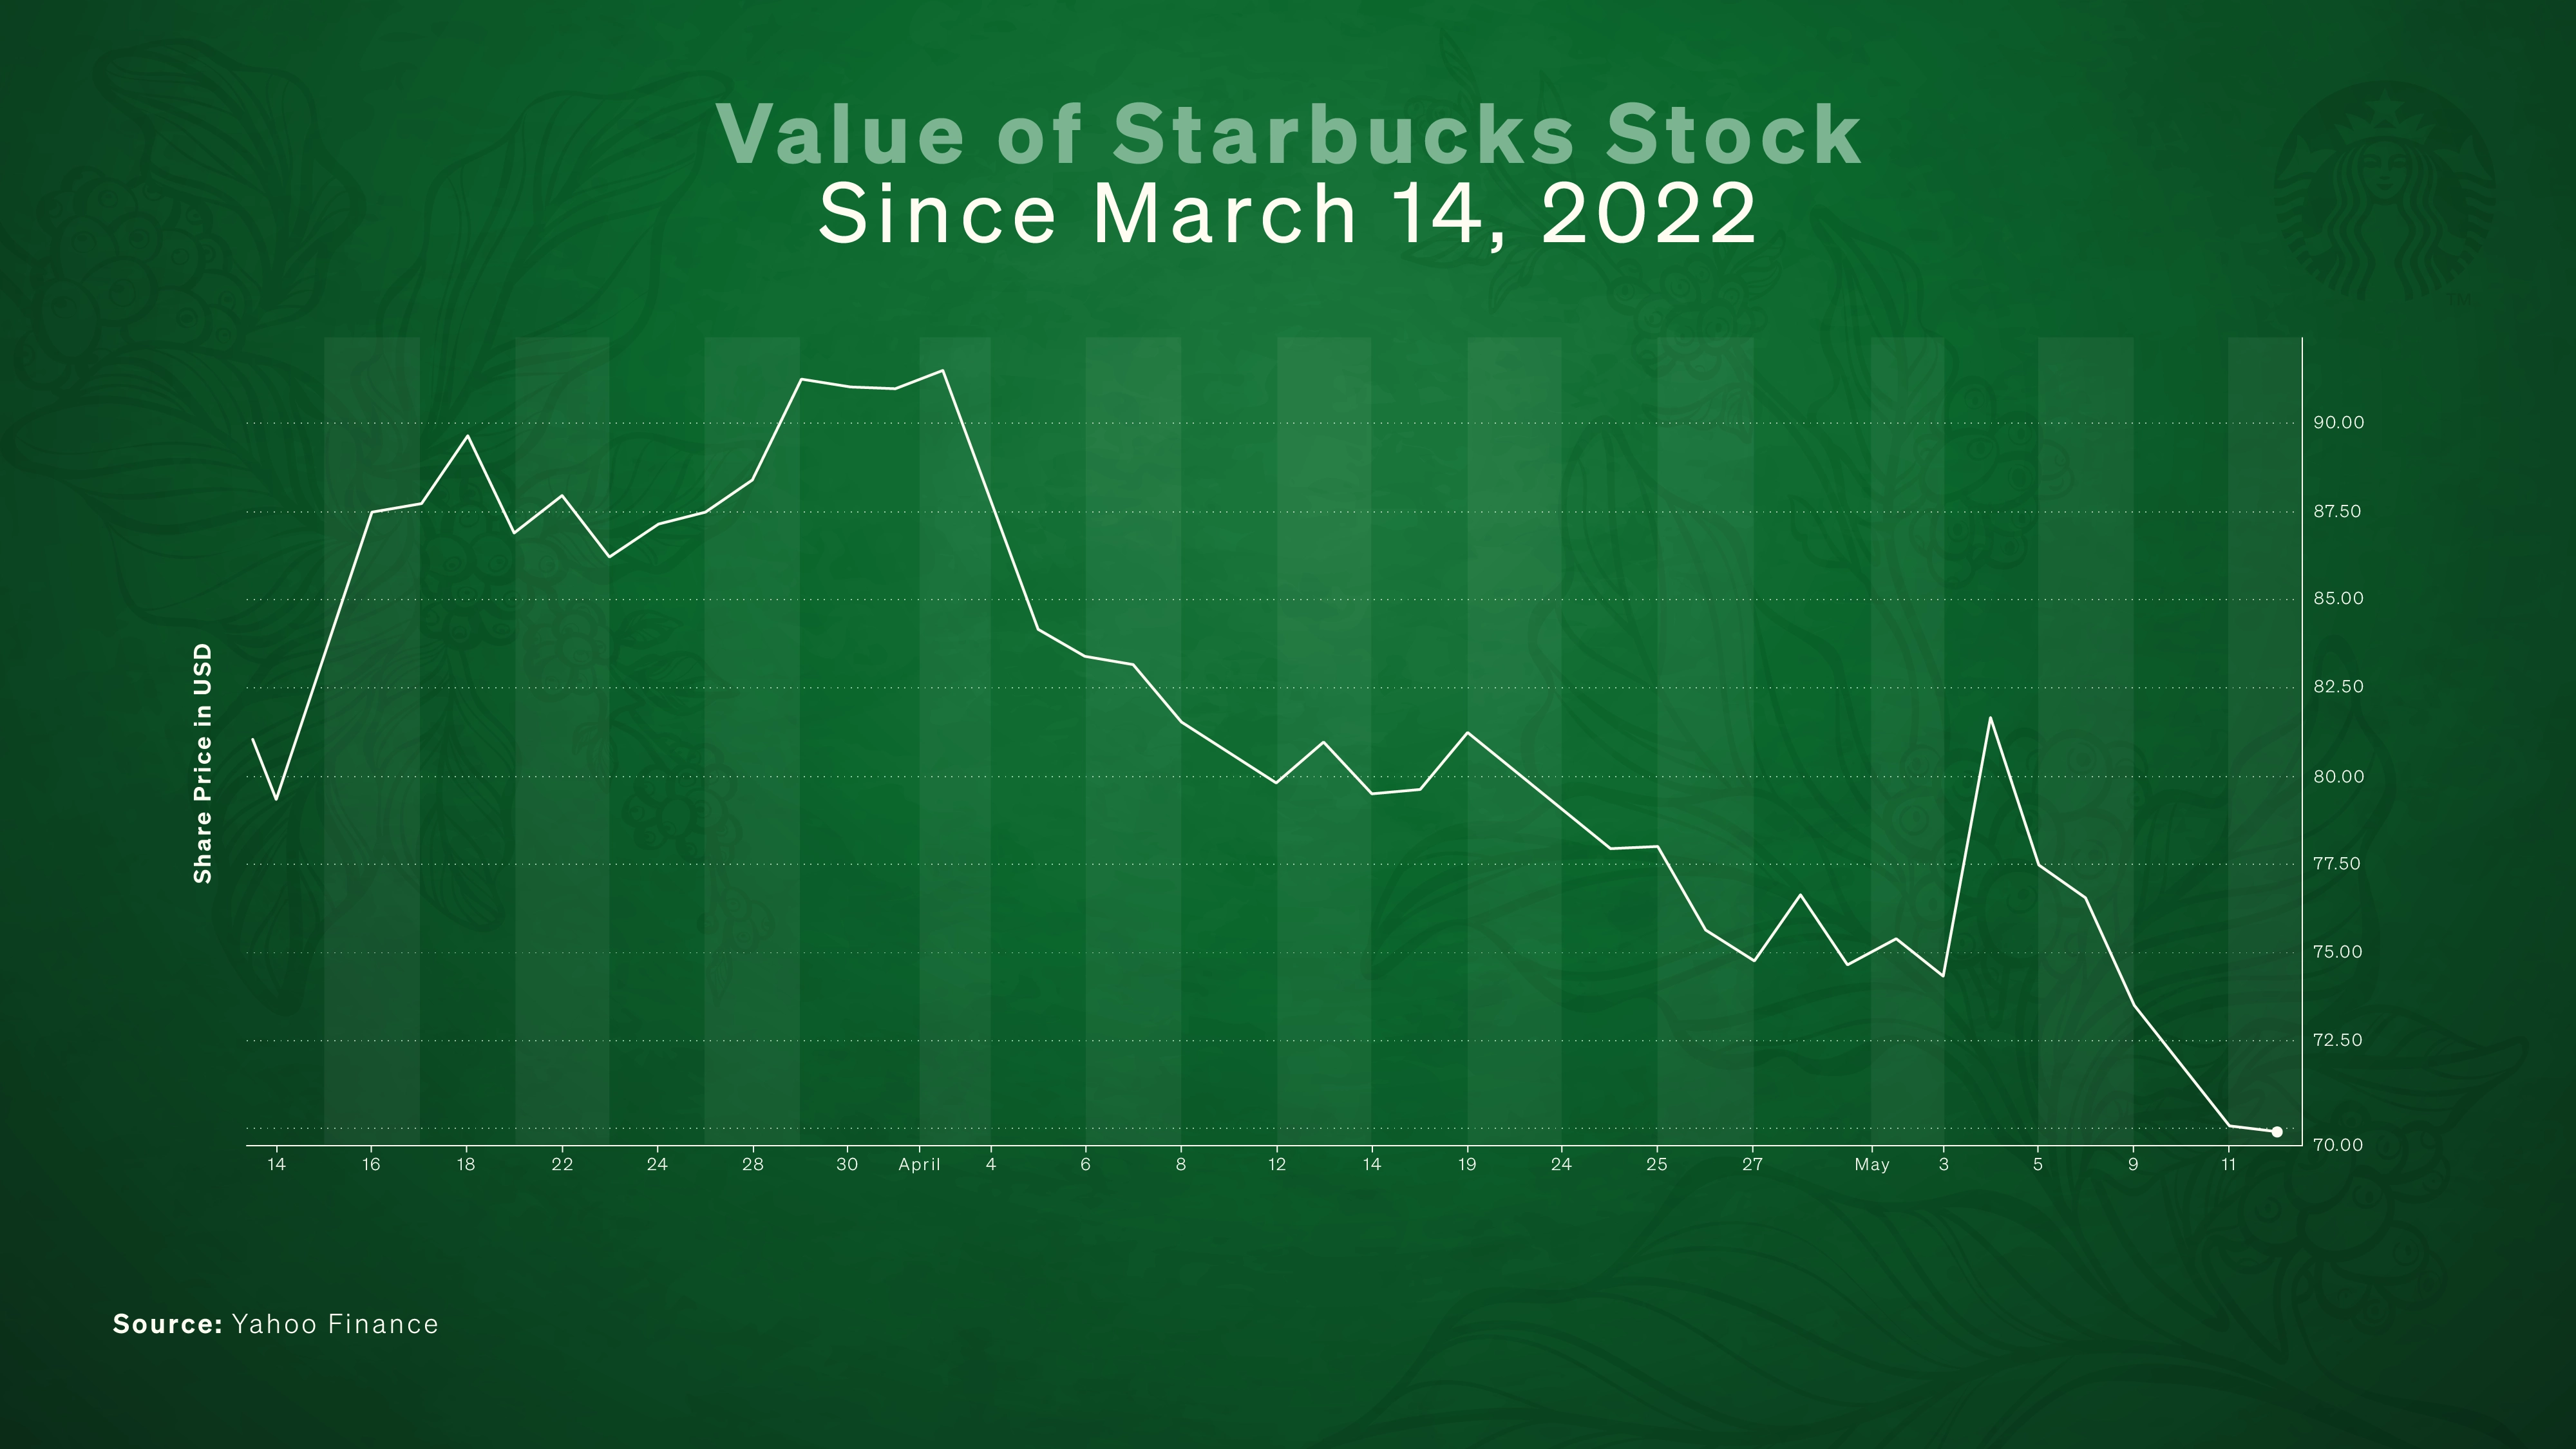 schultz starbucks union stock value March